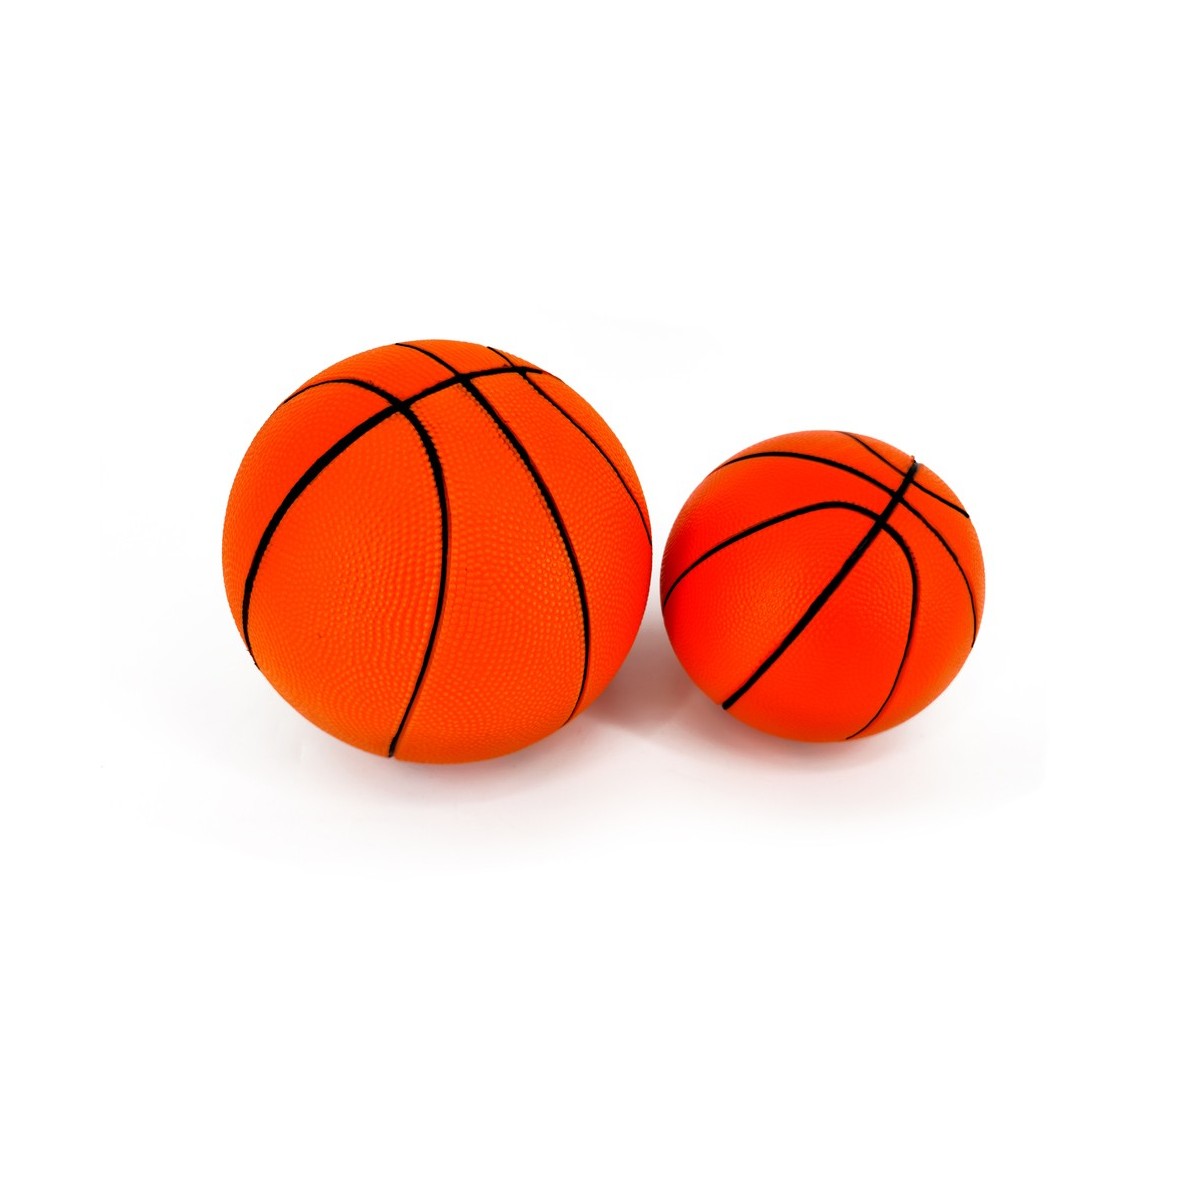 Basket Silencieux - Marque - Modèle - Balle en Mousse Souple